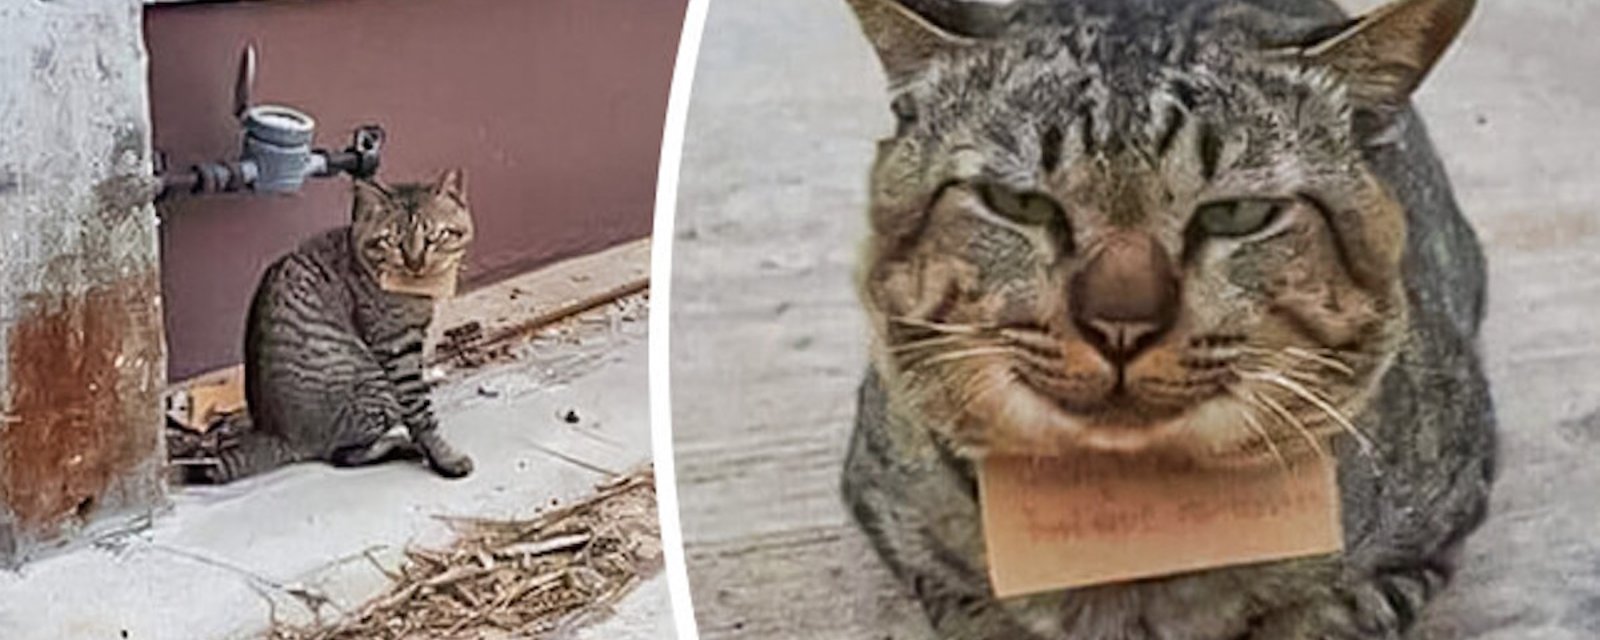 Un chat disparait pendant 3 jours et revient avec un message à son cou